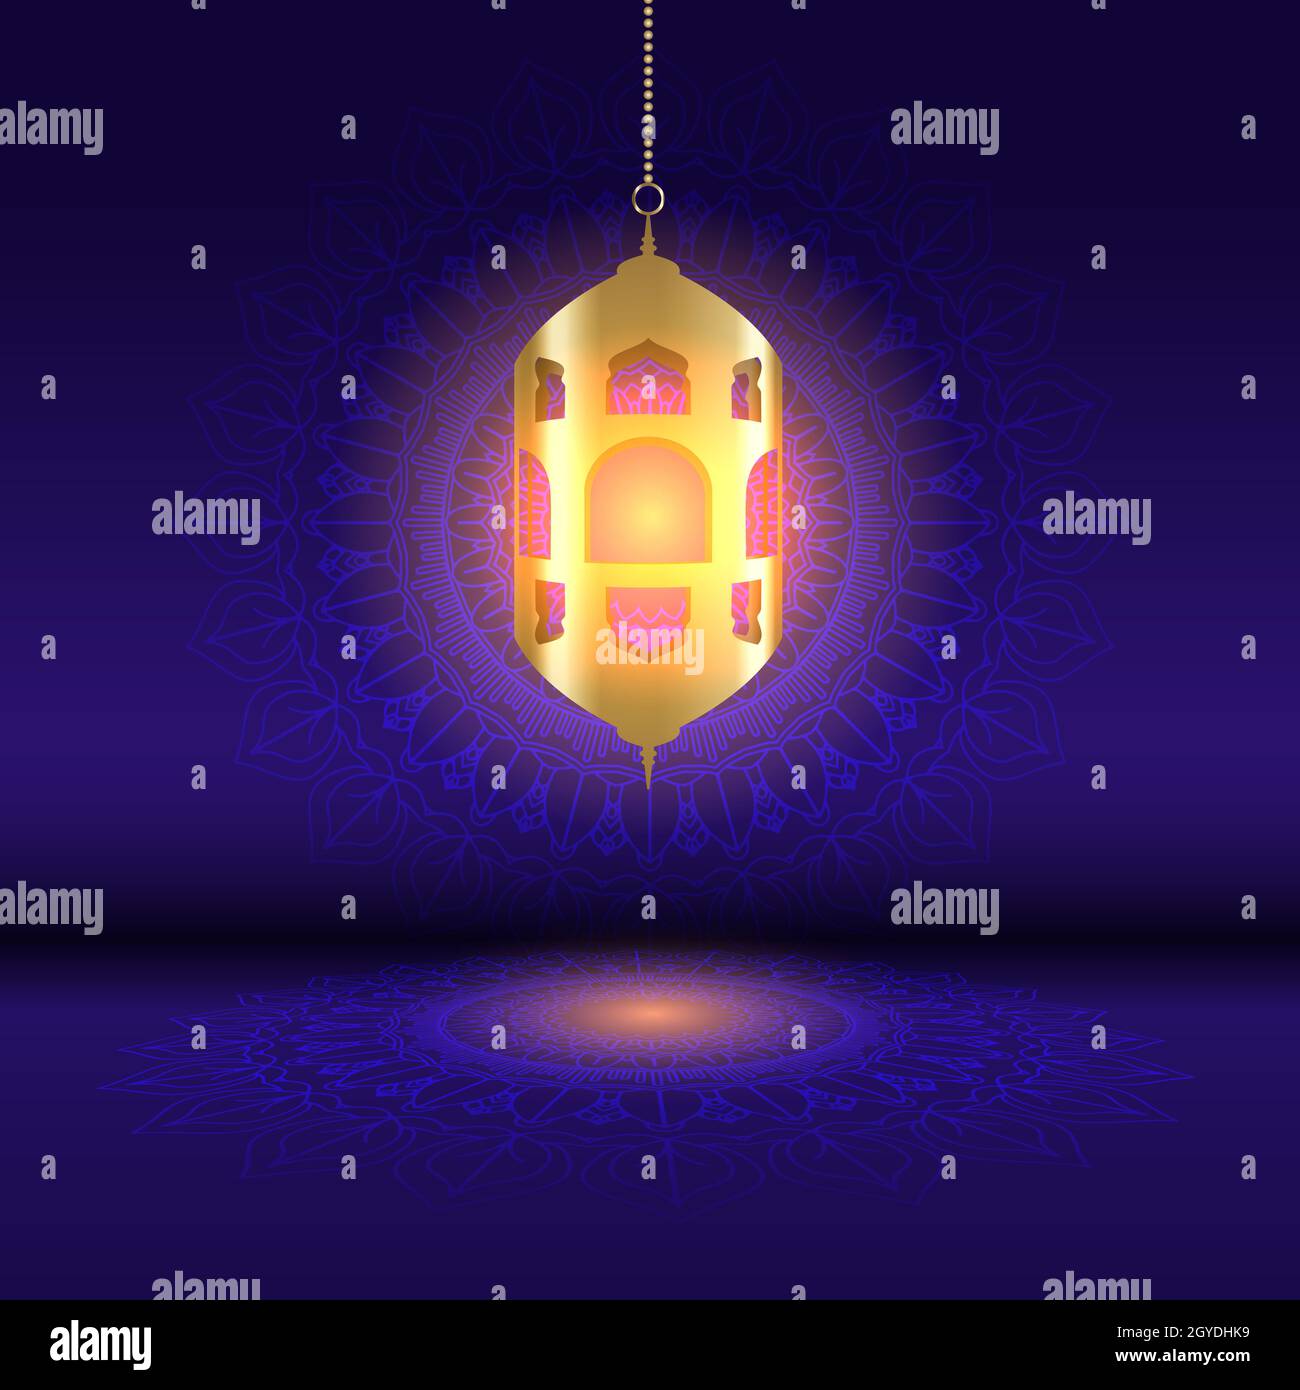 Fond de Ramadan avec une lanterne suspendue sur un motif de mandala décoratif Banque D'Images